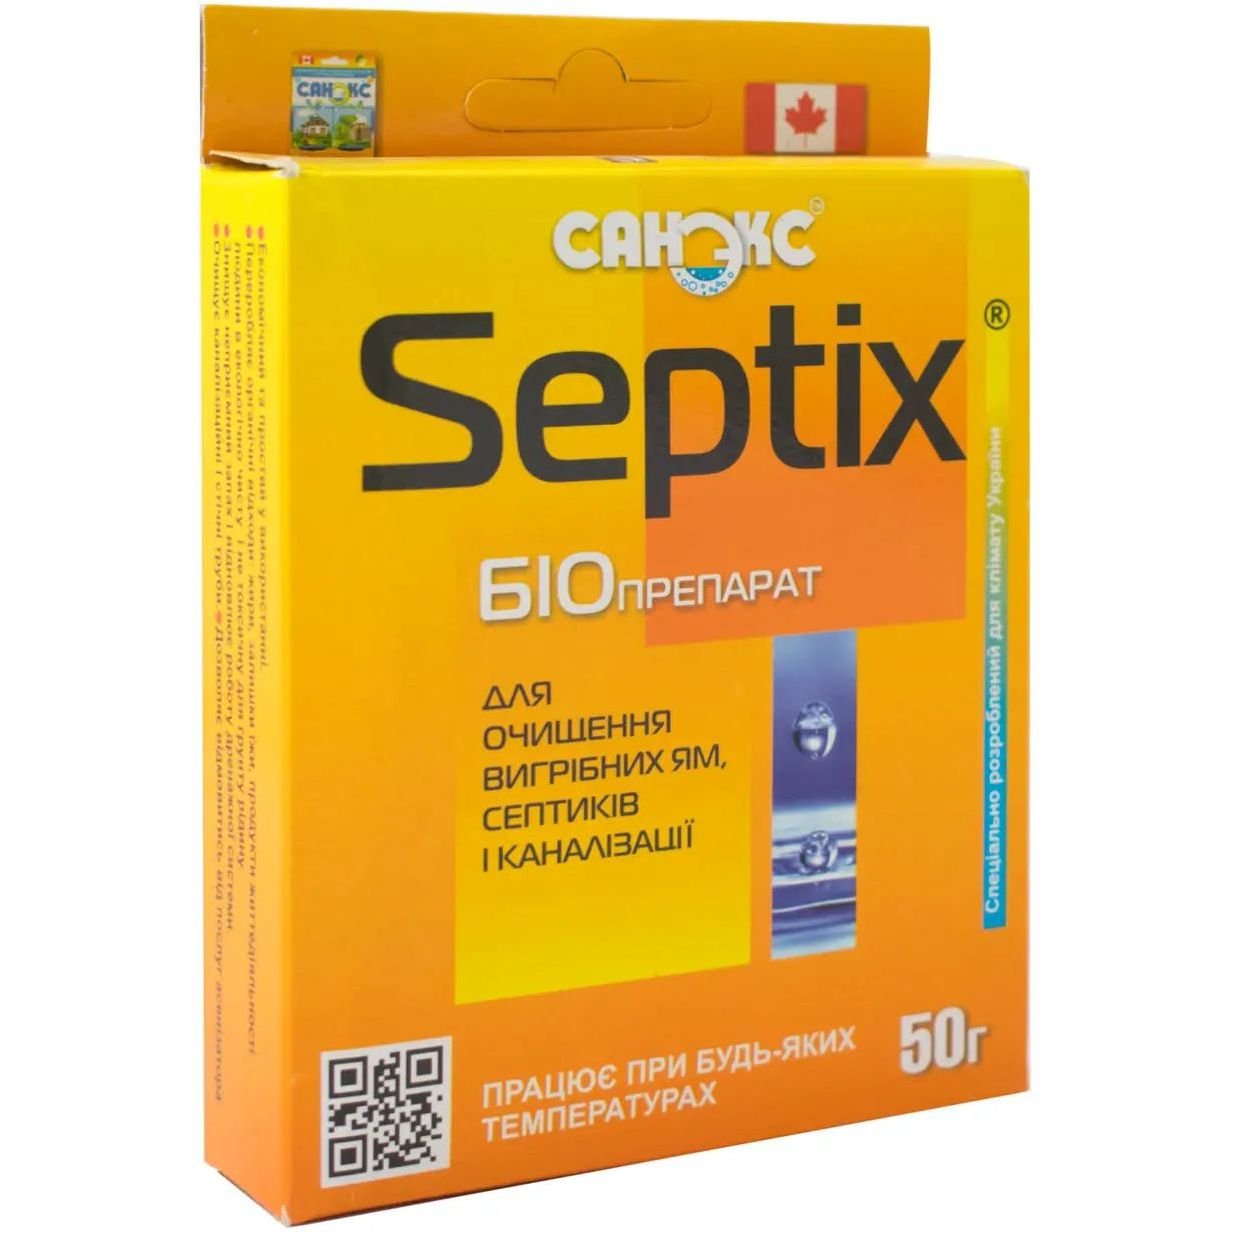 Біодеструктор Санекс Bio Septics для очищення вигрібних ям, септиків і каналізації 50 г - фото 1